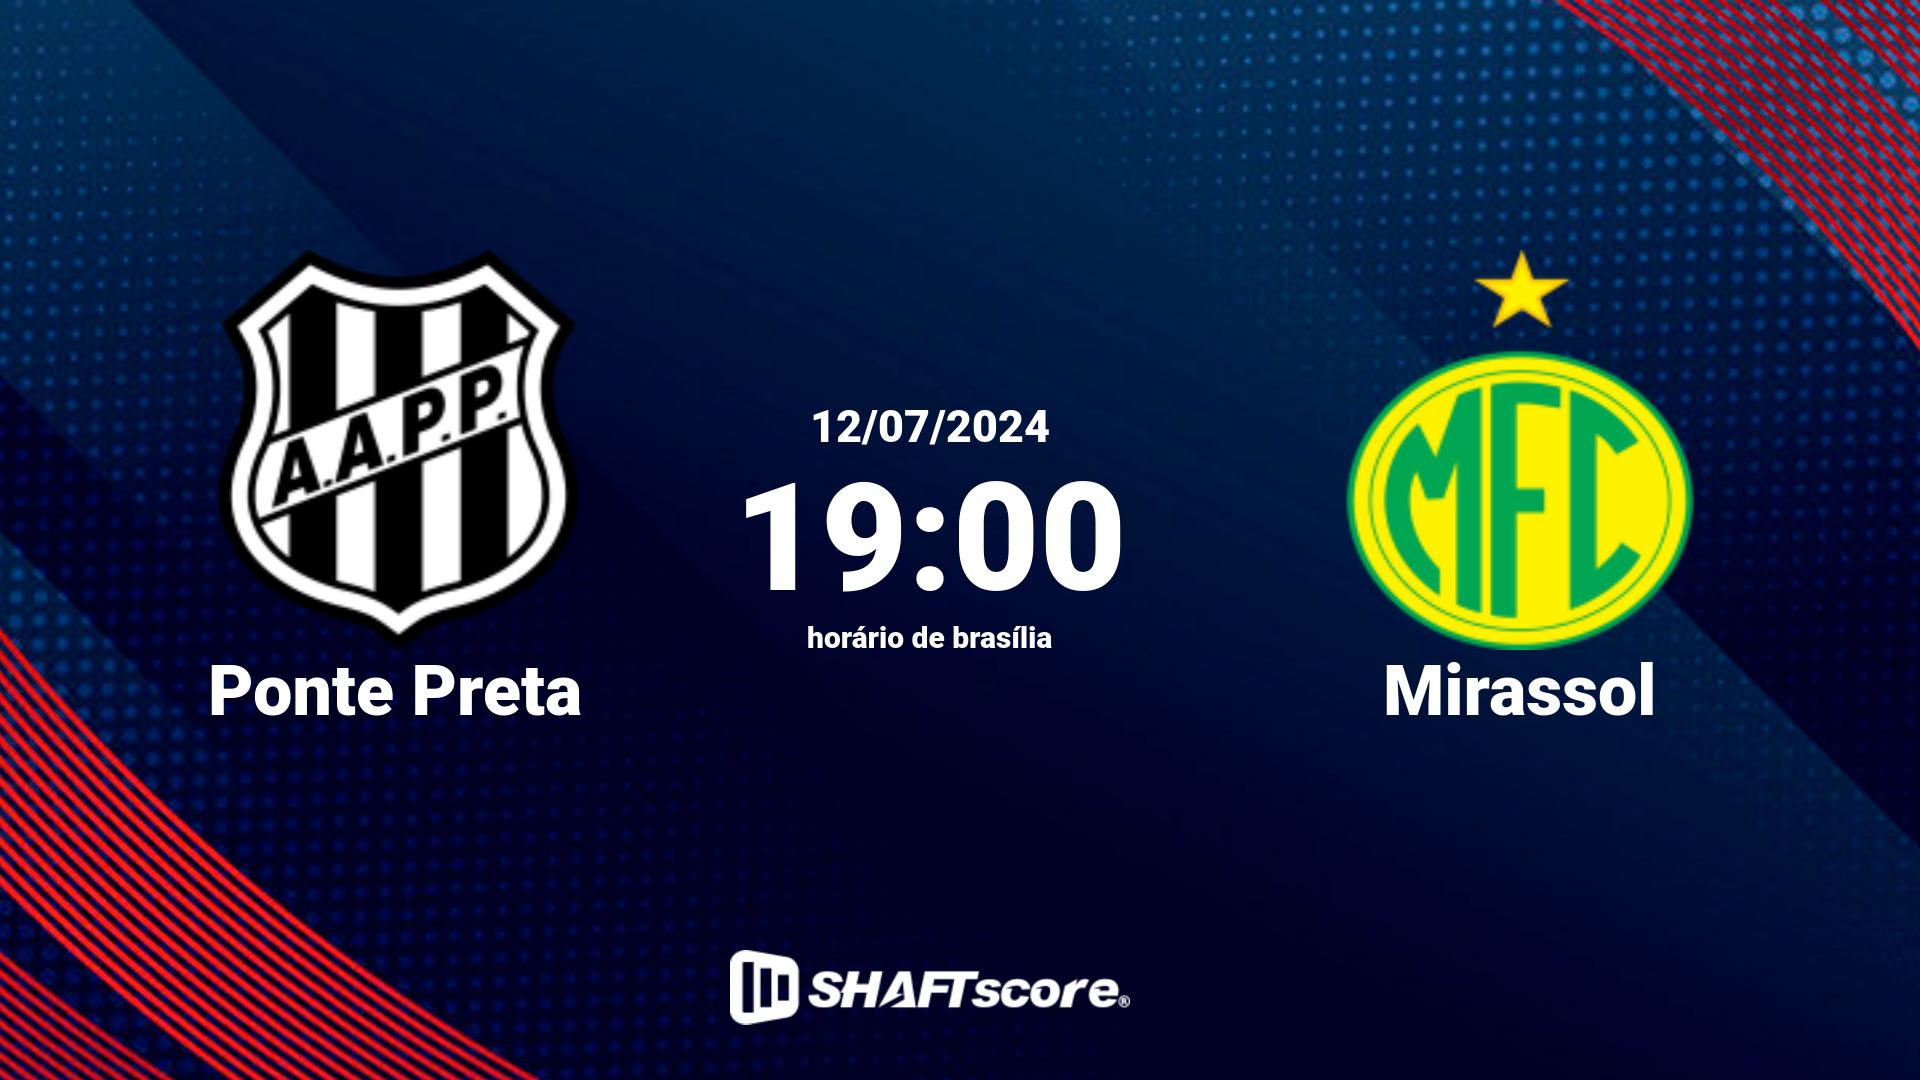 Estatísticas do jogo Ponte Preta vs Mirassol 12.07 19:00